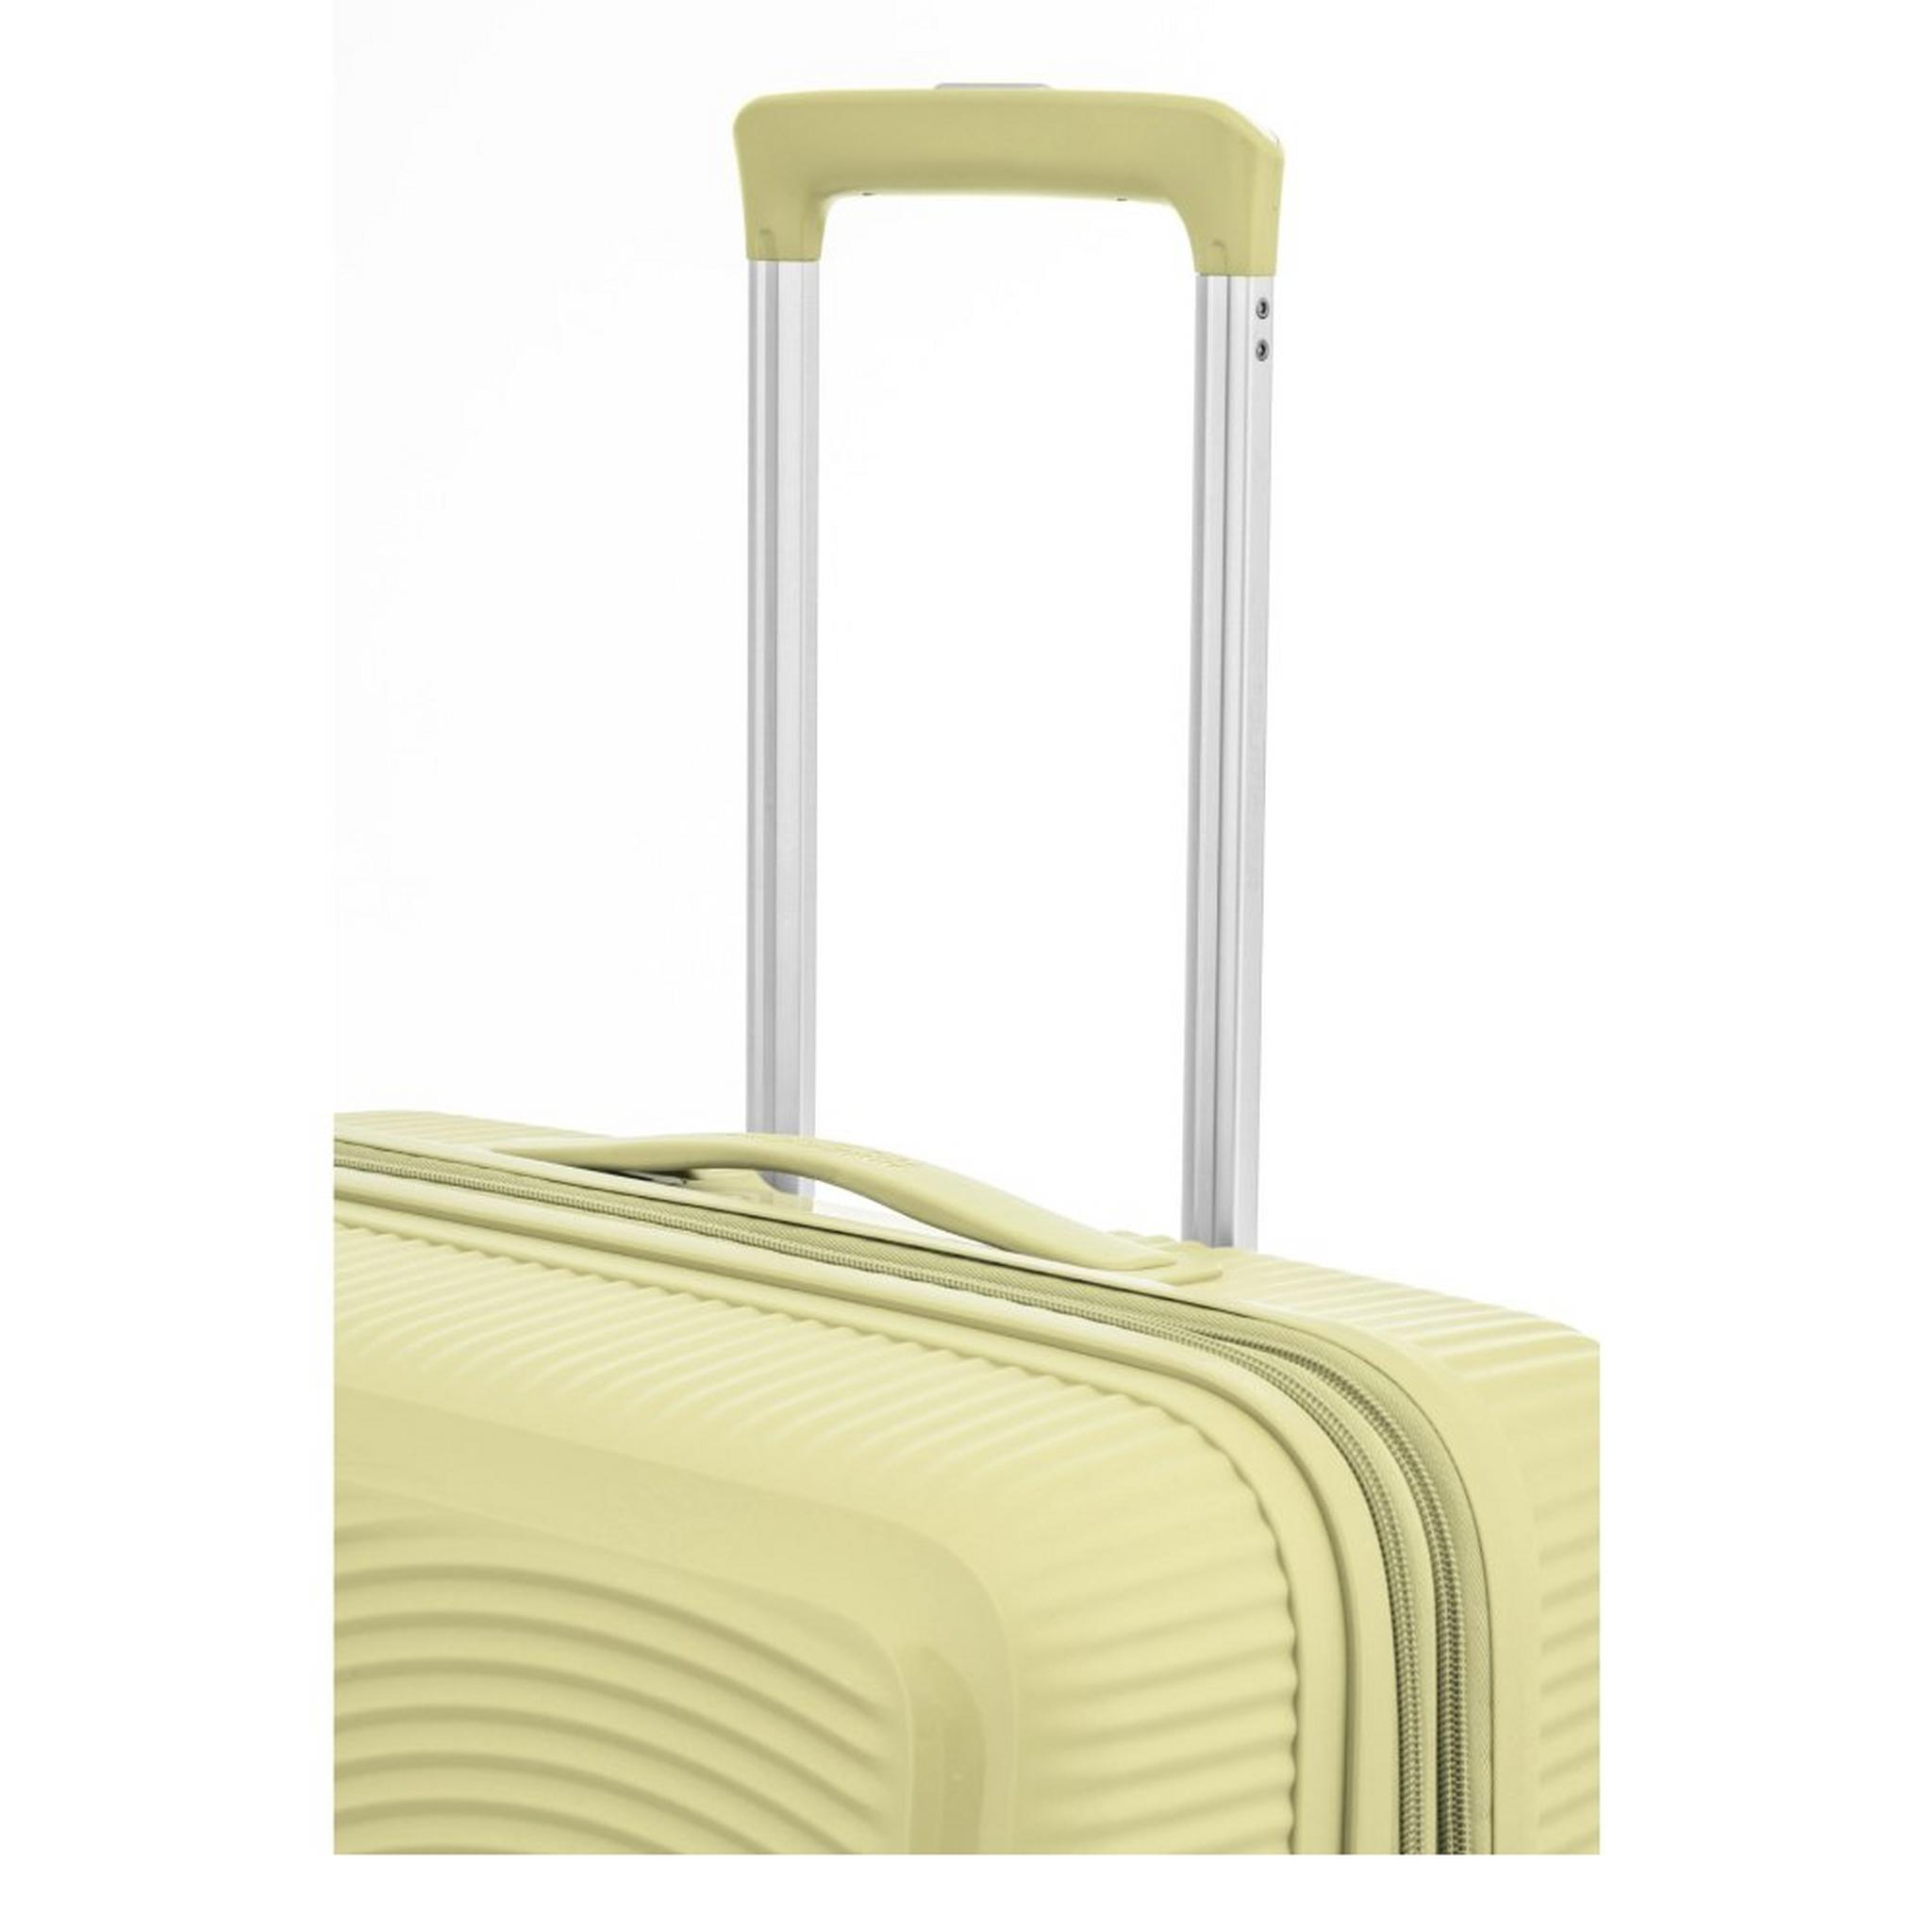 حقيبة سفر كوريو بجوانب صلبة وعجلات دوارة من أمريكان توريستر، مقاس 55 سم، AO8X13023– الكسترد الأصفر